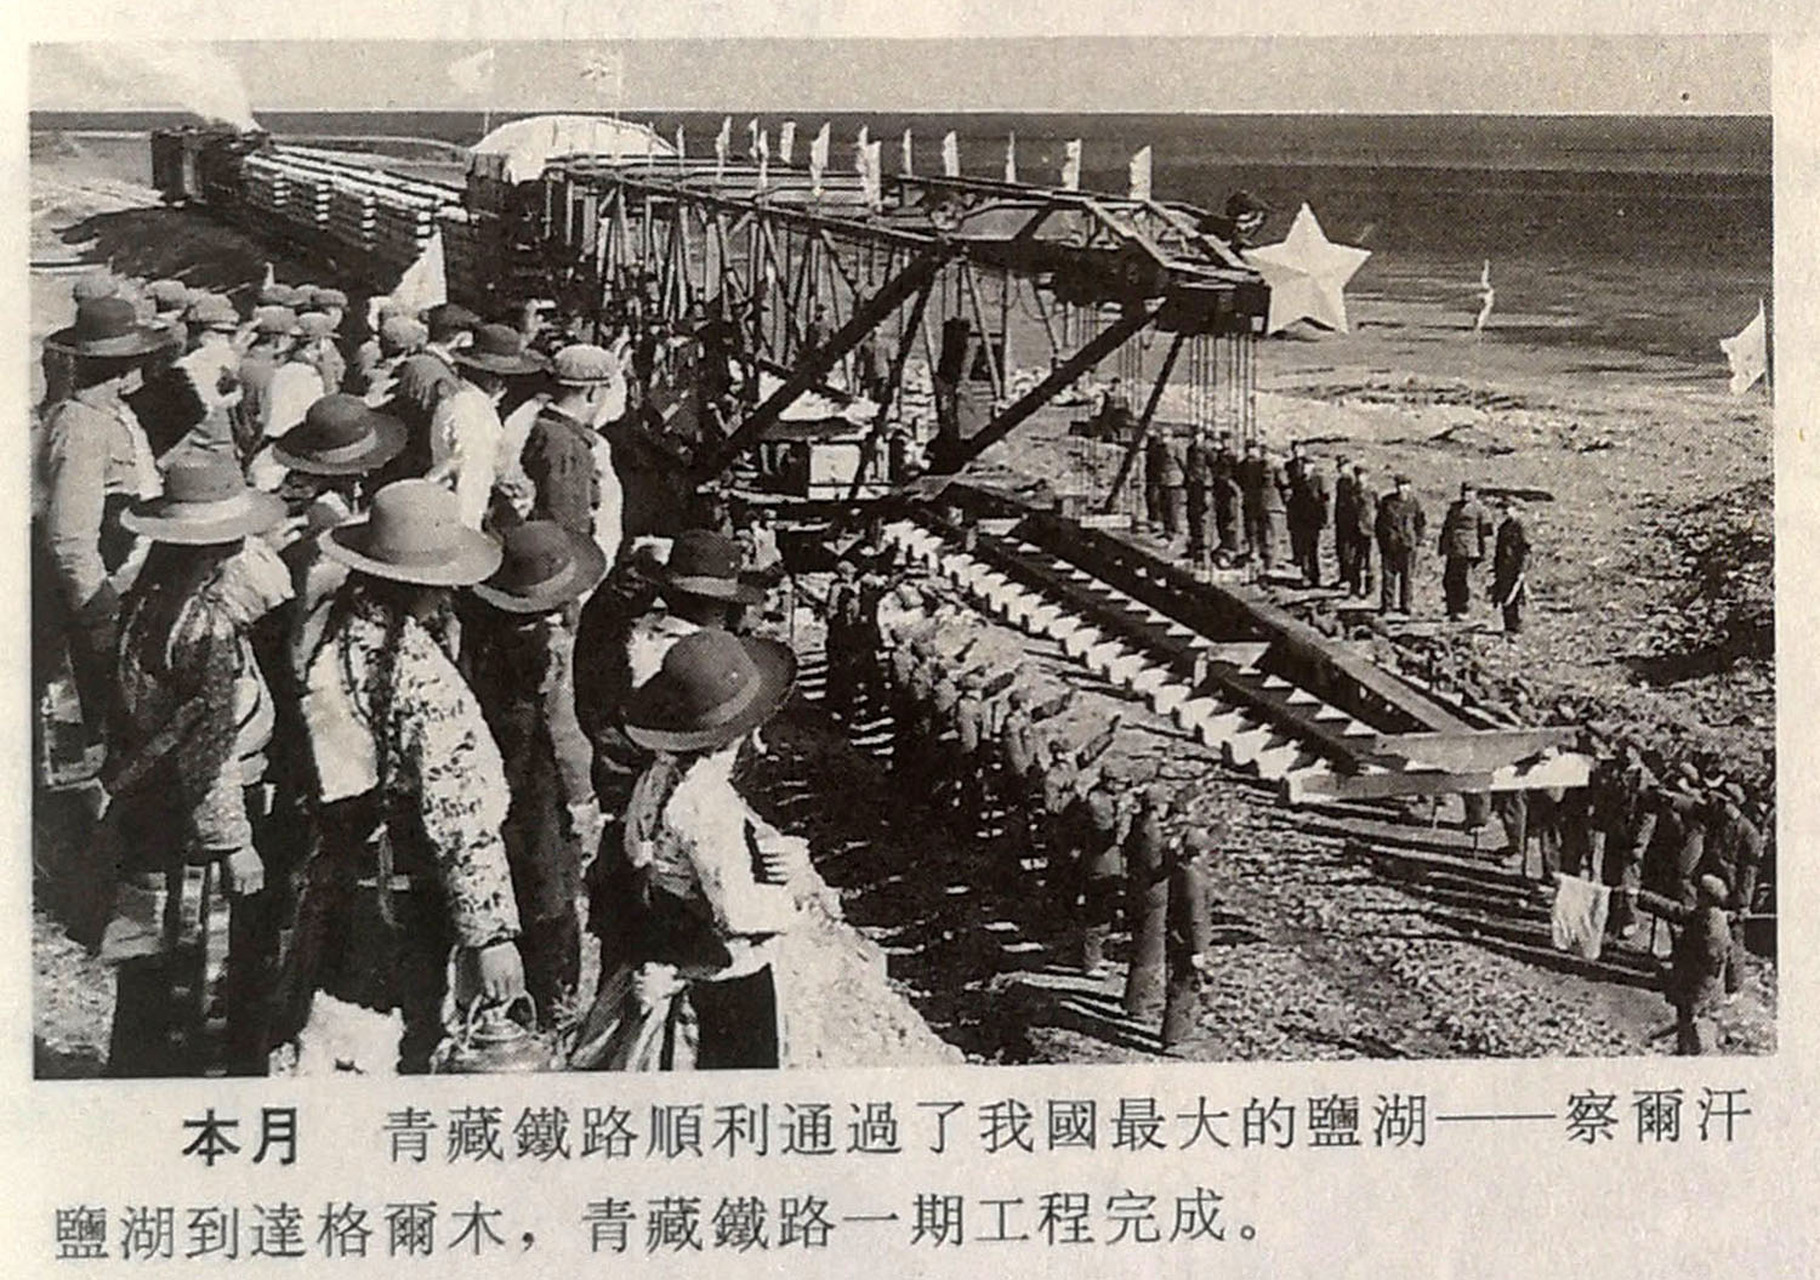 青藏铁路一期工程建成通车 1979年10月青藏铁路第一期工程(哈尔盖至